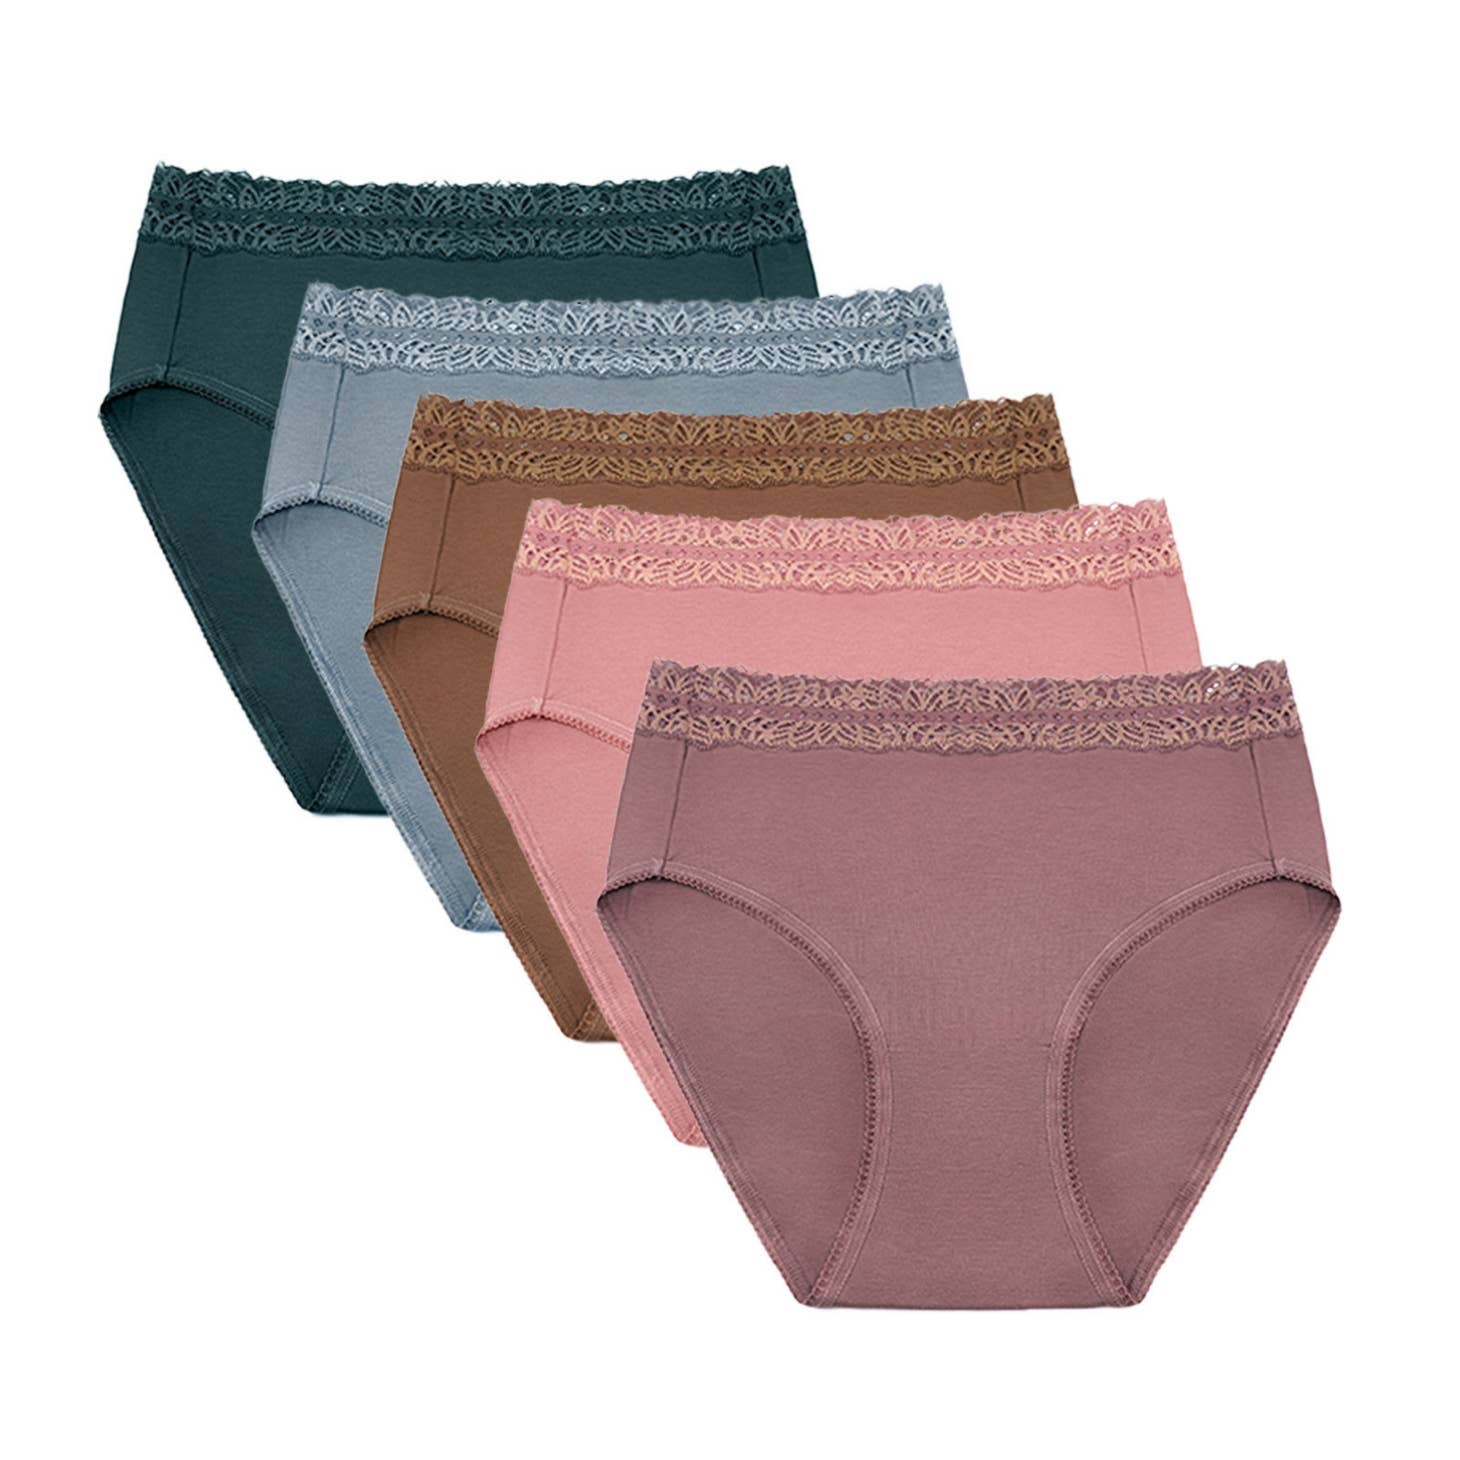 xiaoyun 4-Pack High waisted underwear, women's postpartum body